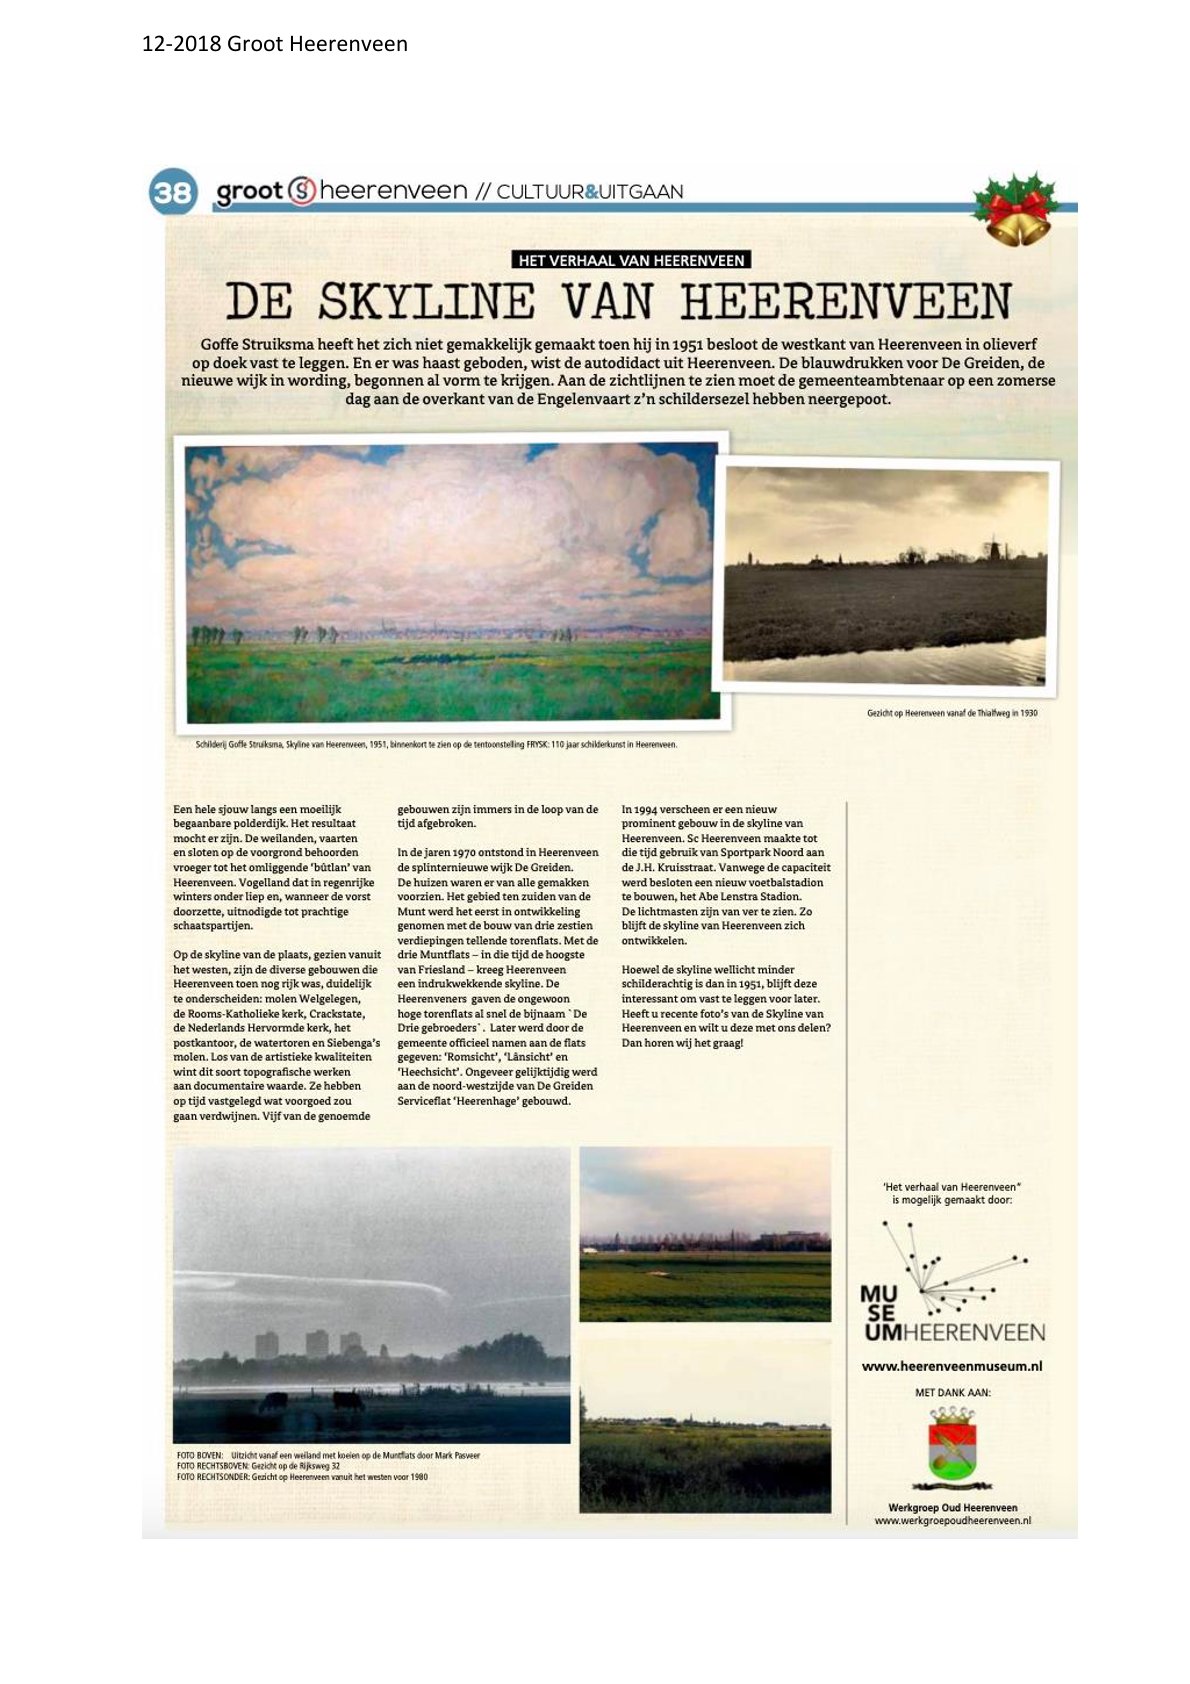 De skyline van Heerenveen